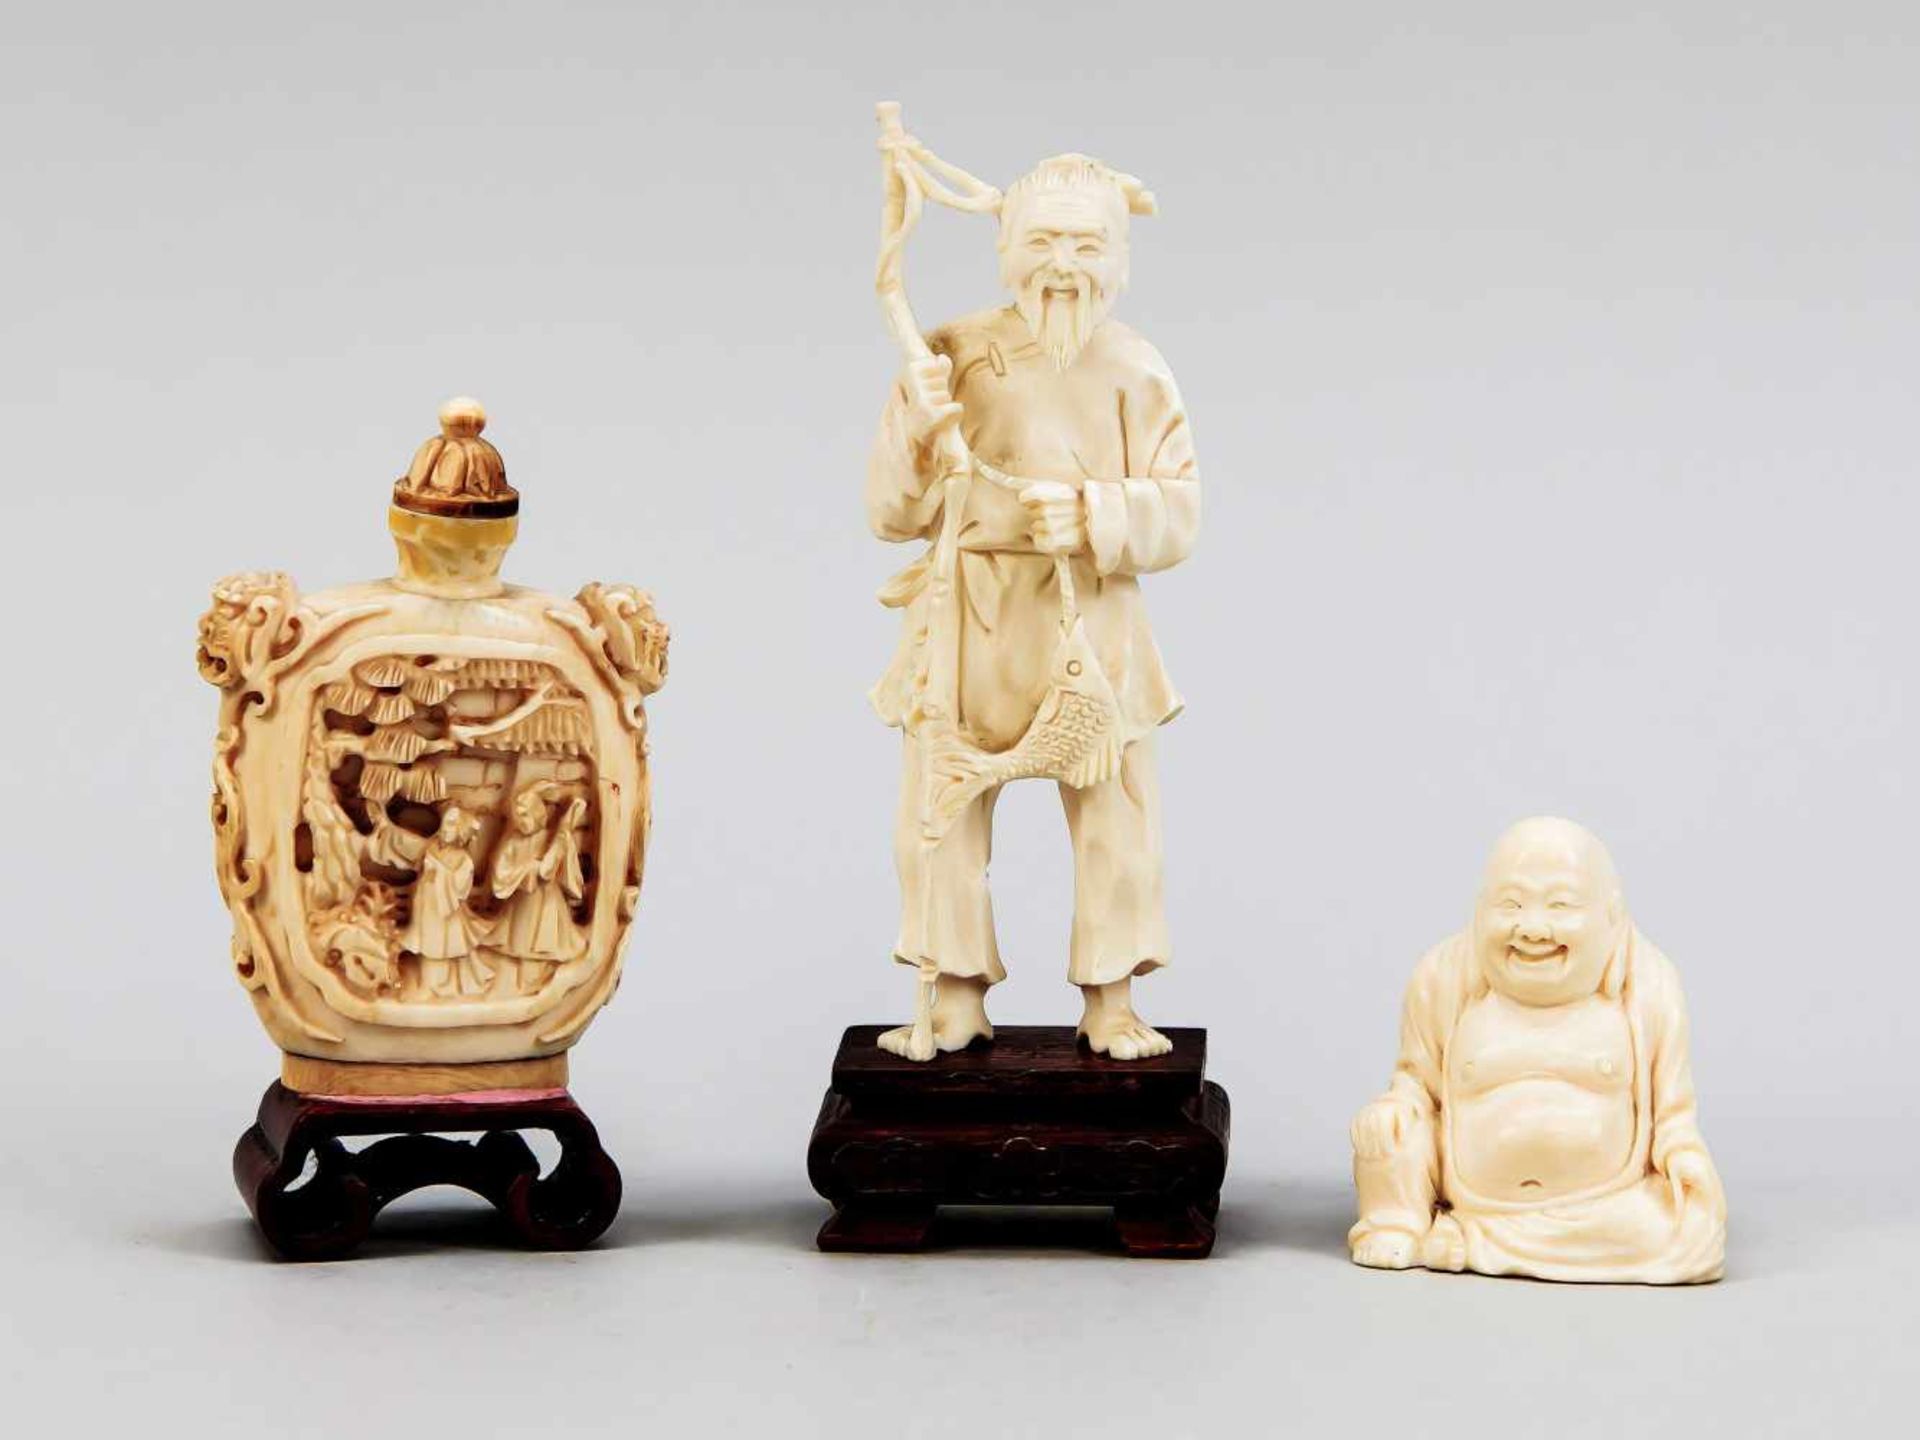 3 Elfenbeinschnitzereien, China, Anfang 20. Jh. 1 x sitzender Hotei (H. 5 cm), 1 xSnuffbottle mit